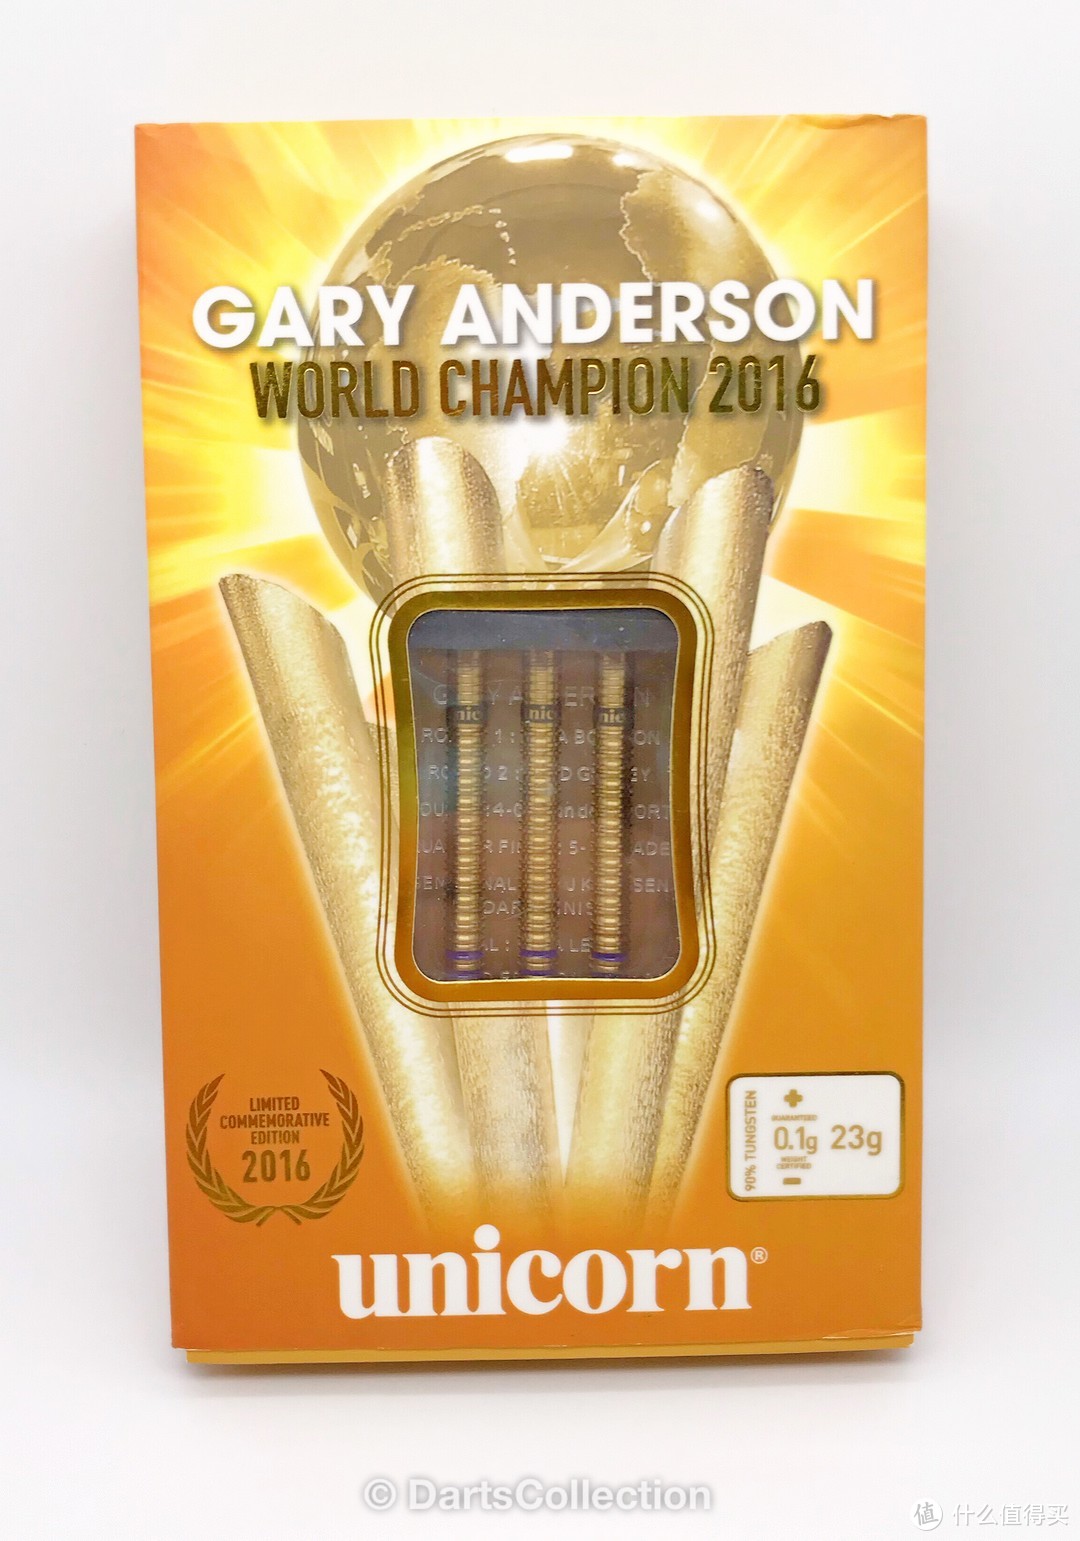 飞镖收藏第三十期—Unicorn Gary Anderson 2016 世锦赛冠军限量版